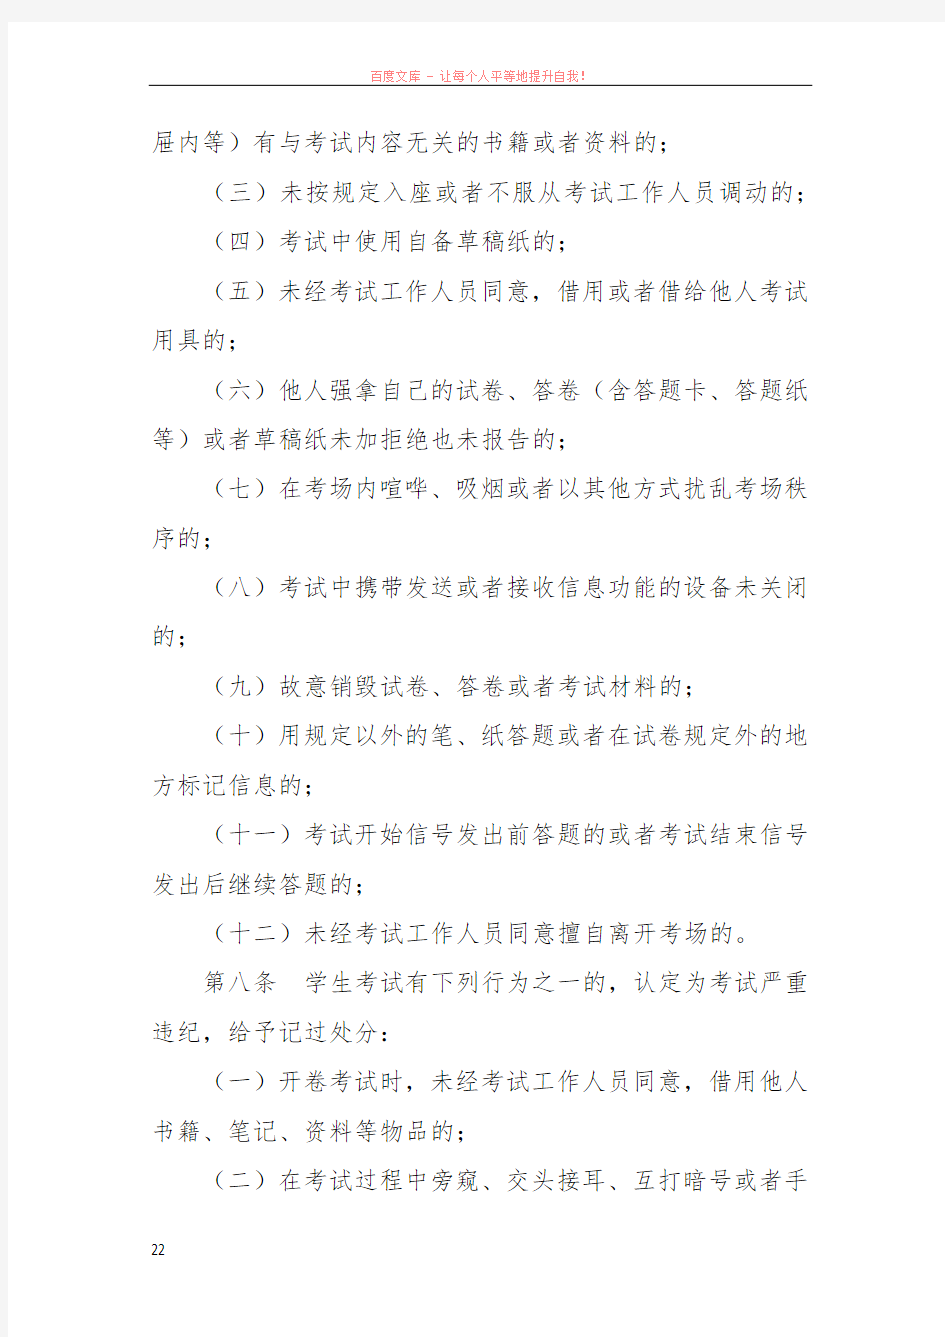 重庆大学普通本科学生考试违纪作弊处理办法